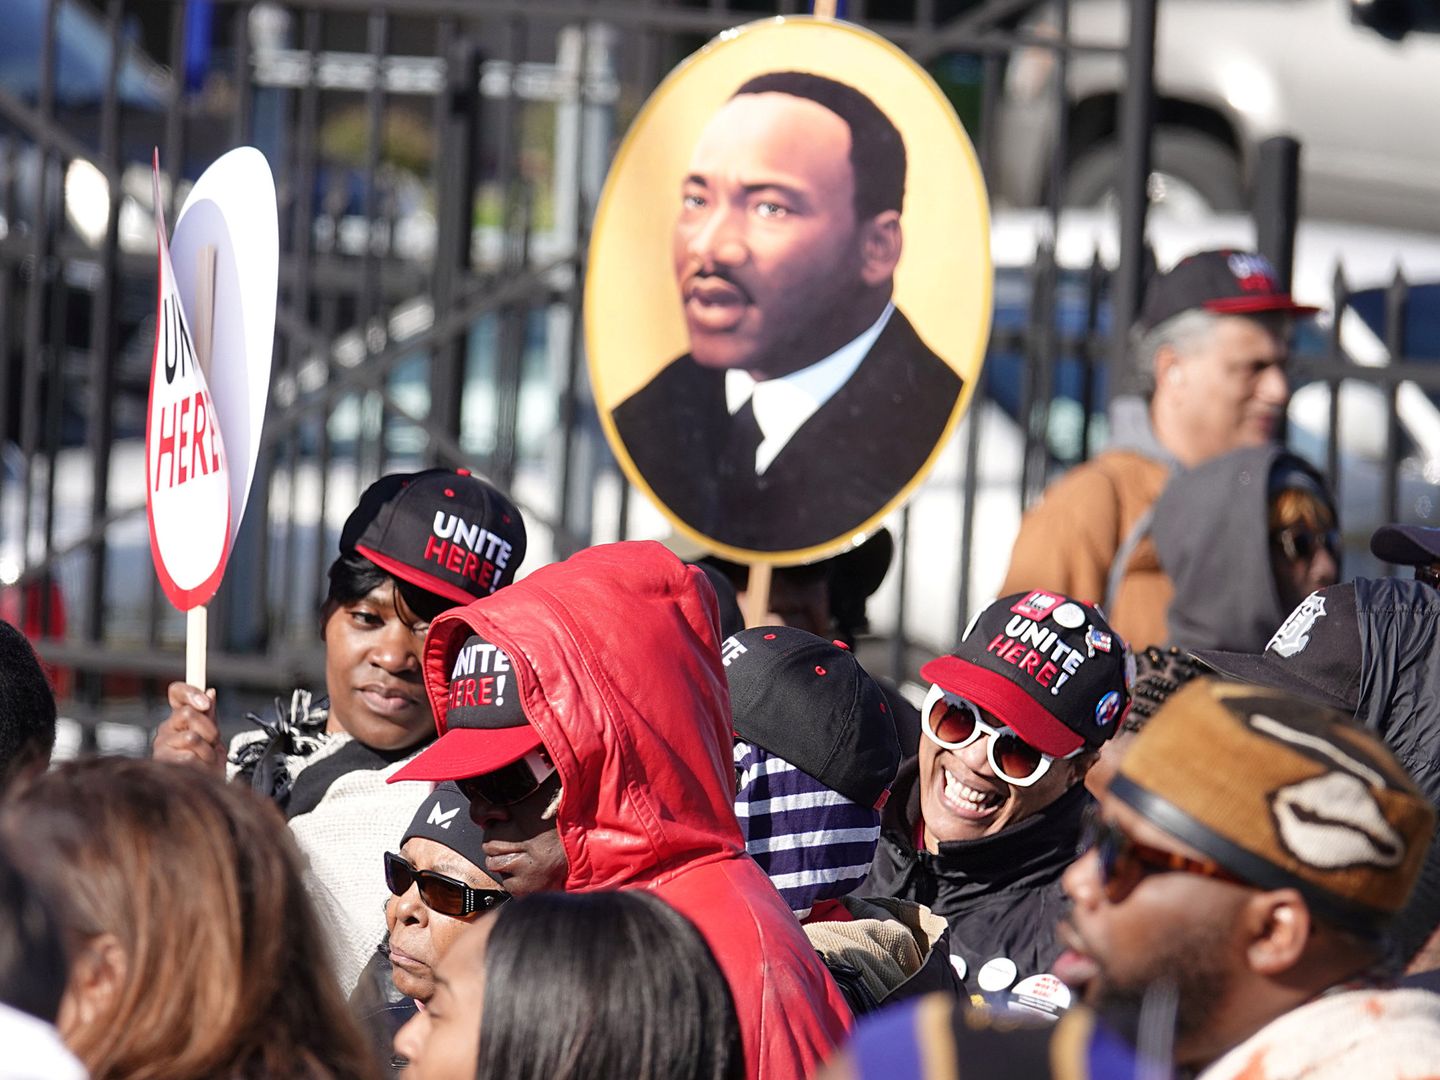 Marcha de homenaje por el 50 aniversario del asesinato de Martin Luther King en Washington. (Reuters)